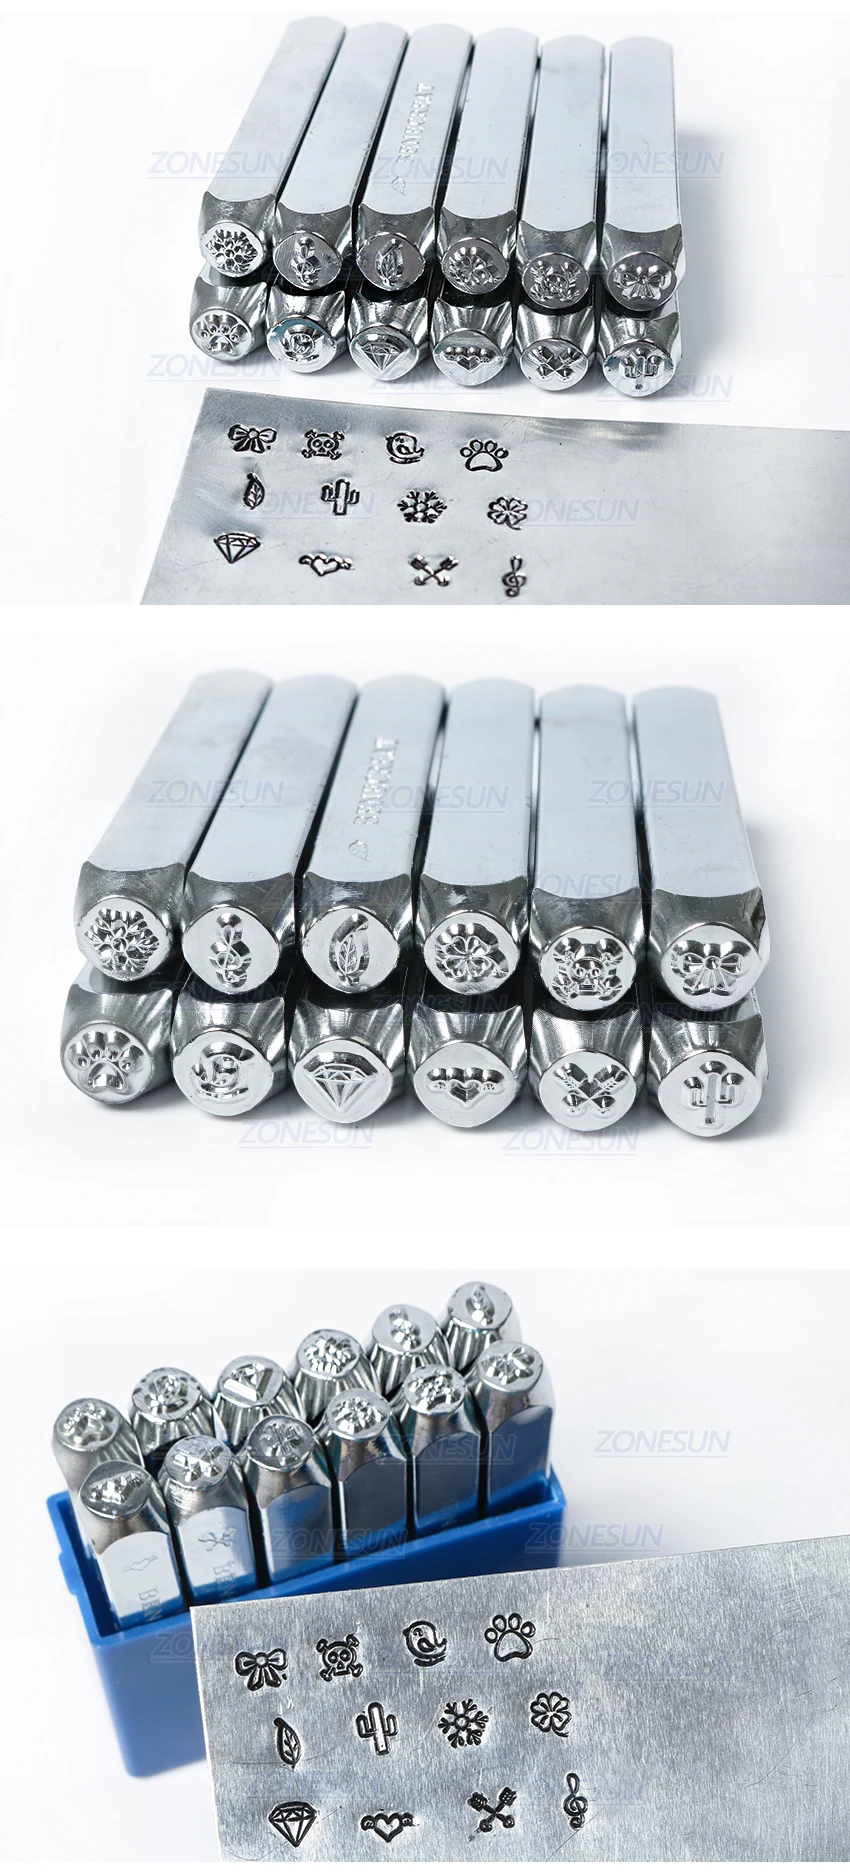 ZONESUN 4 шт. ювелирные изделия штамповка металла алфавит логотип стальные штампы плесень маркировка инструмент штамповки для Золотого кольца браслет ожерелье